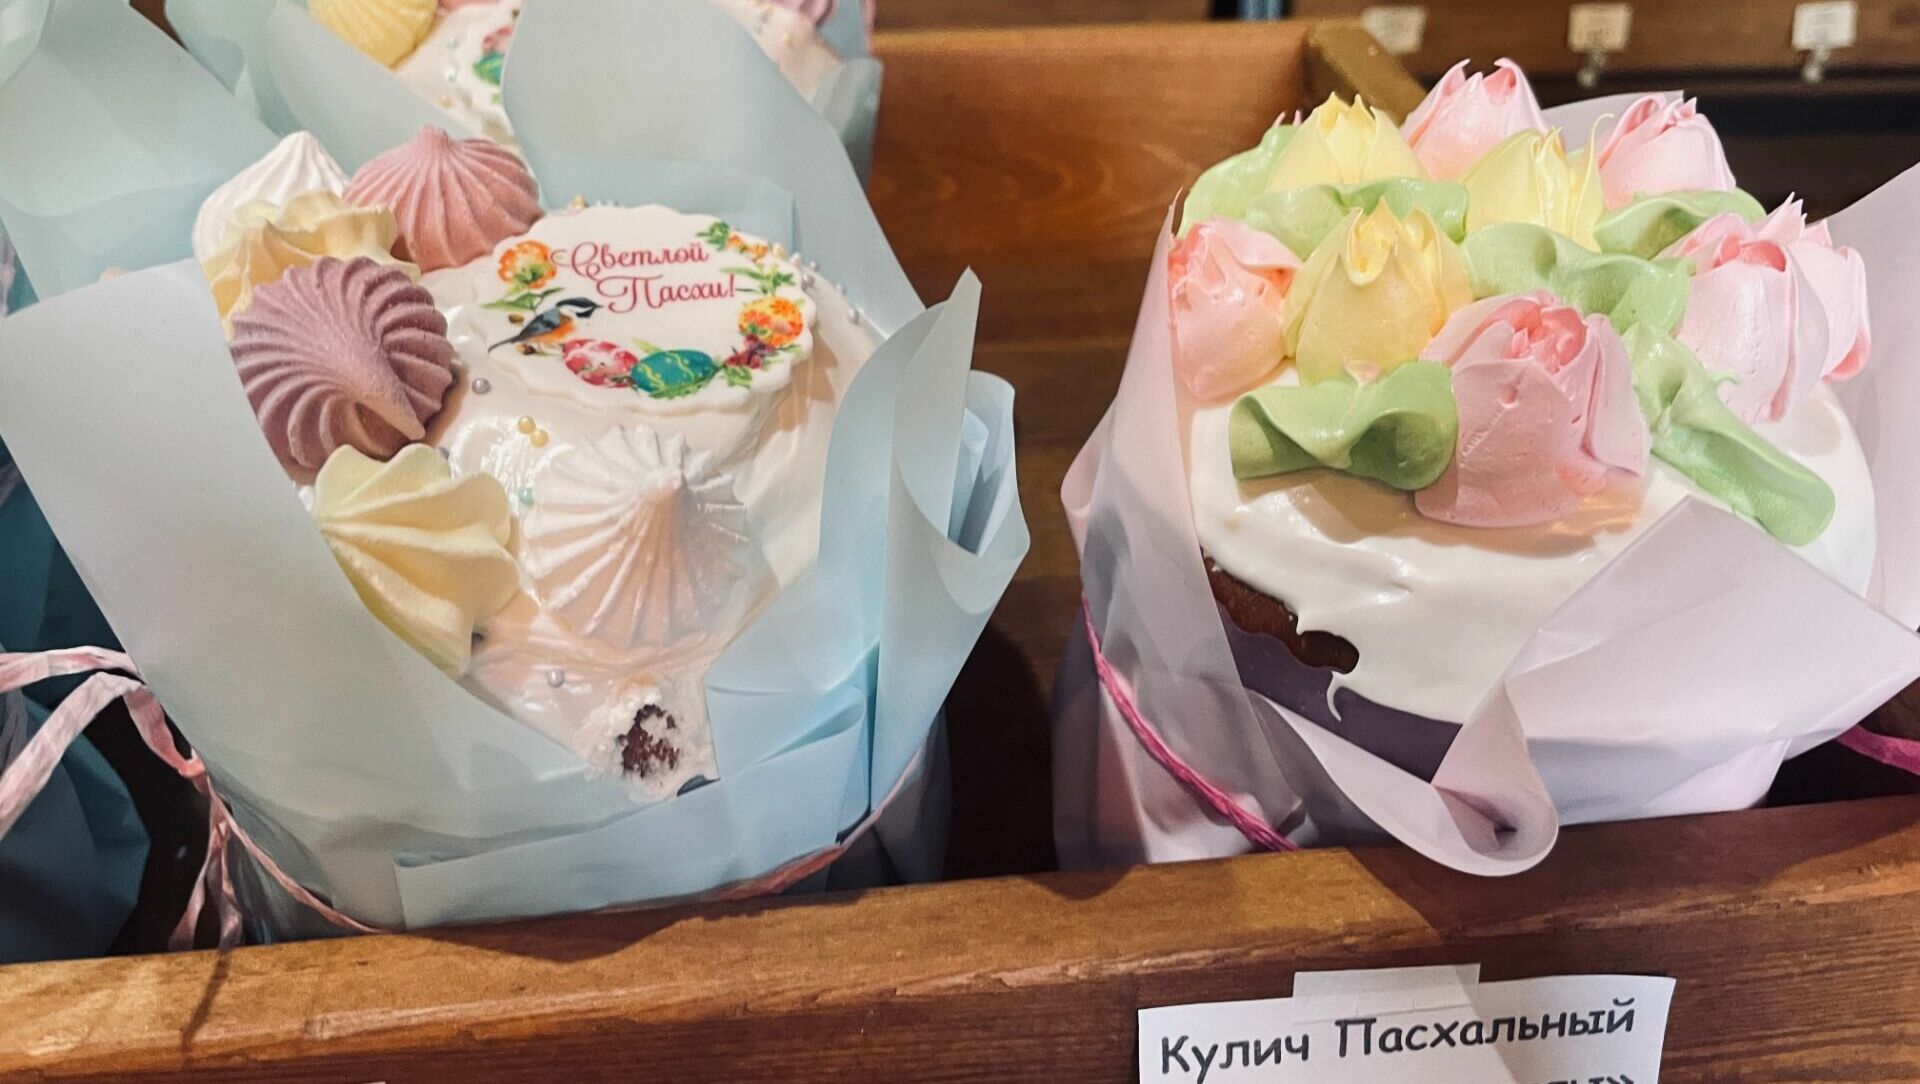 Купить или печь: сколько стоят пасхальные куличи в Ростовской области